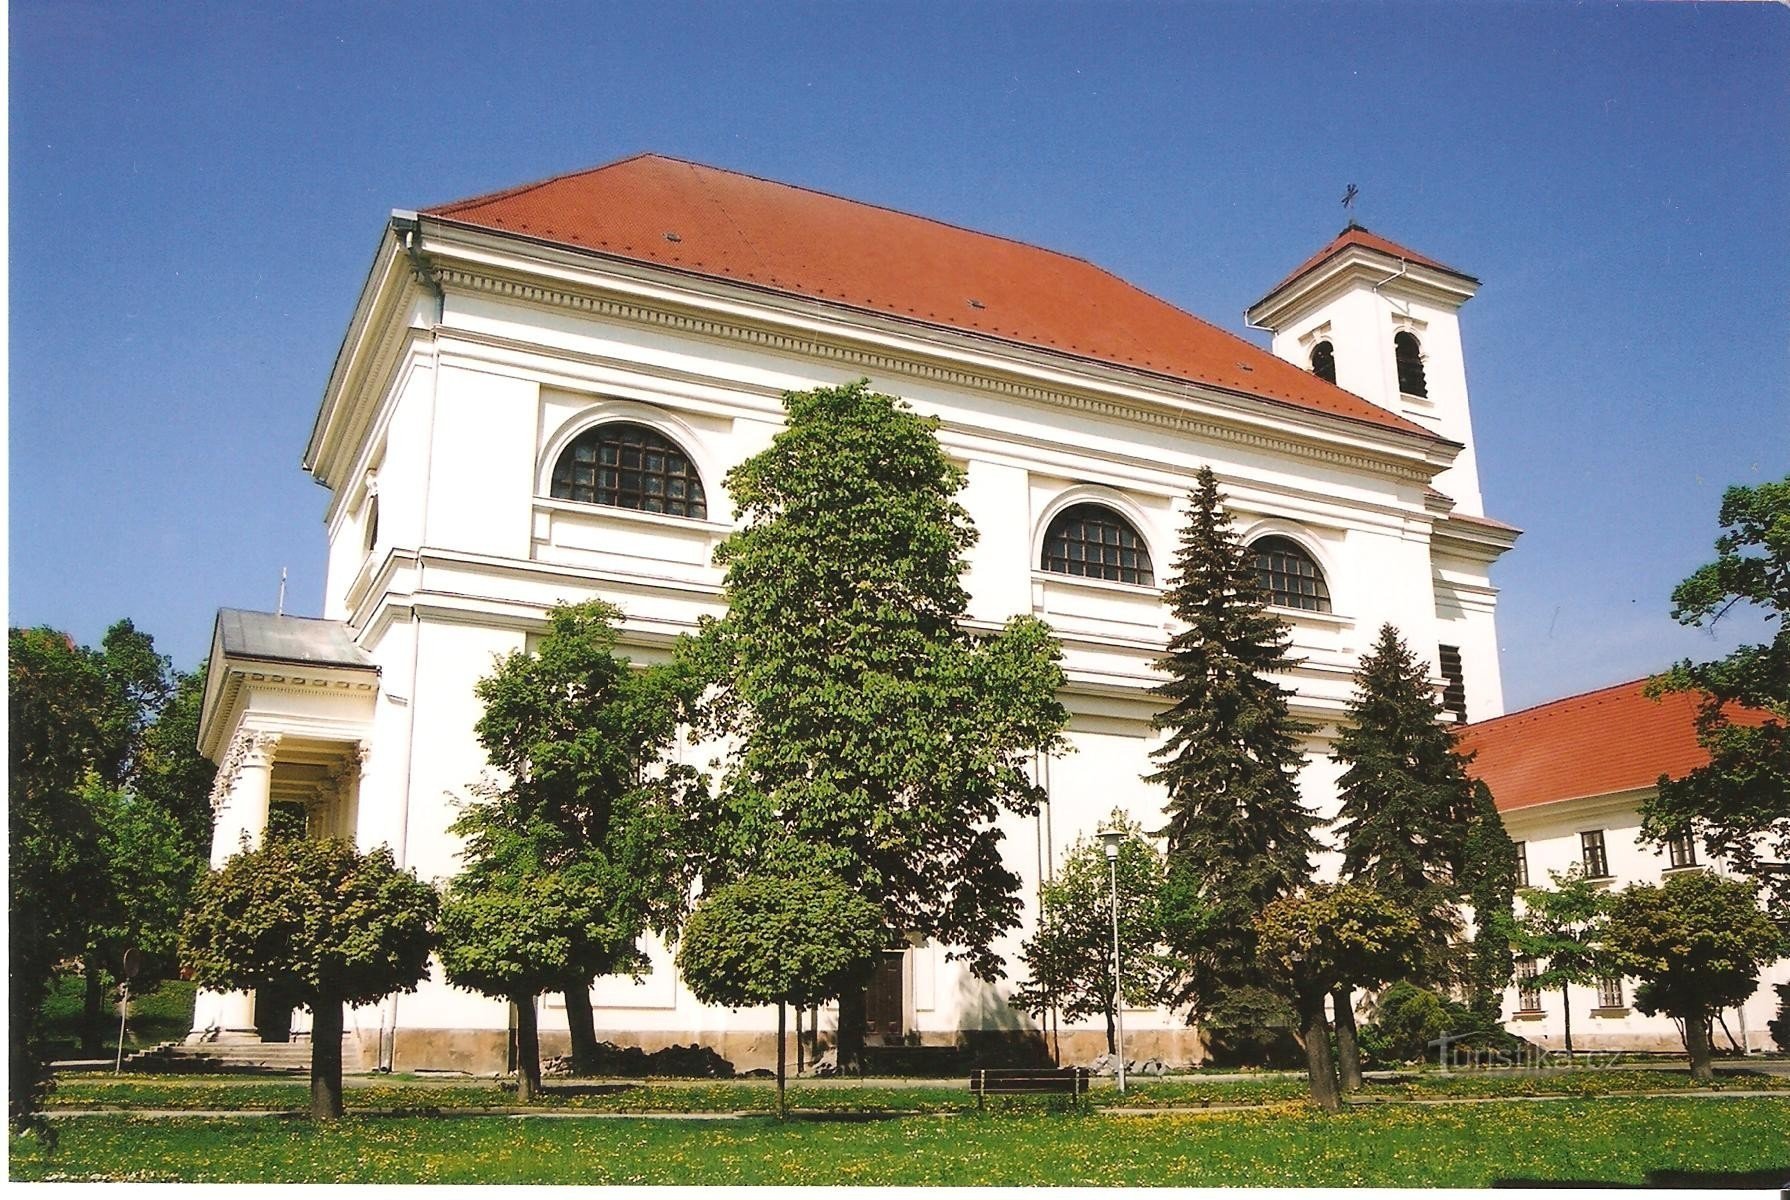 Slavkov - templom